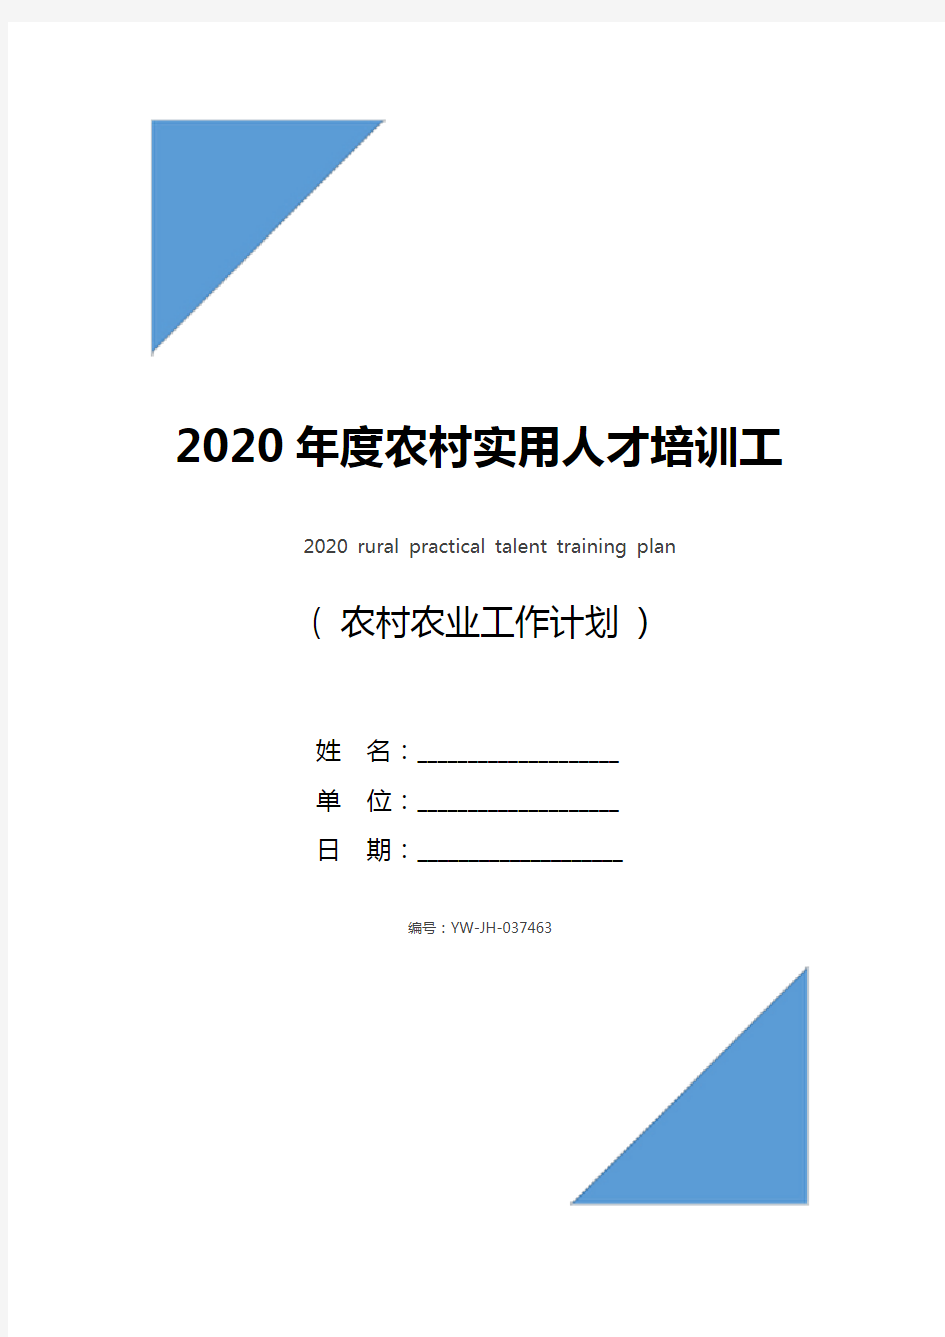 2020年度农村实用人才培训工作计划